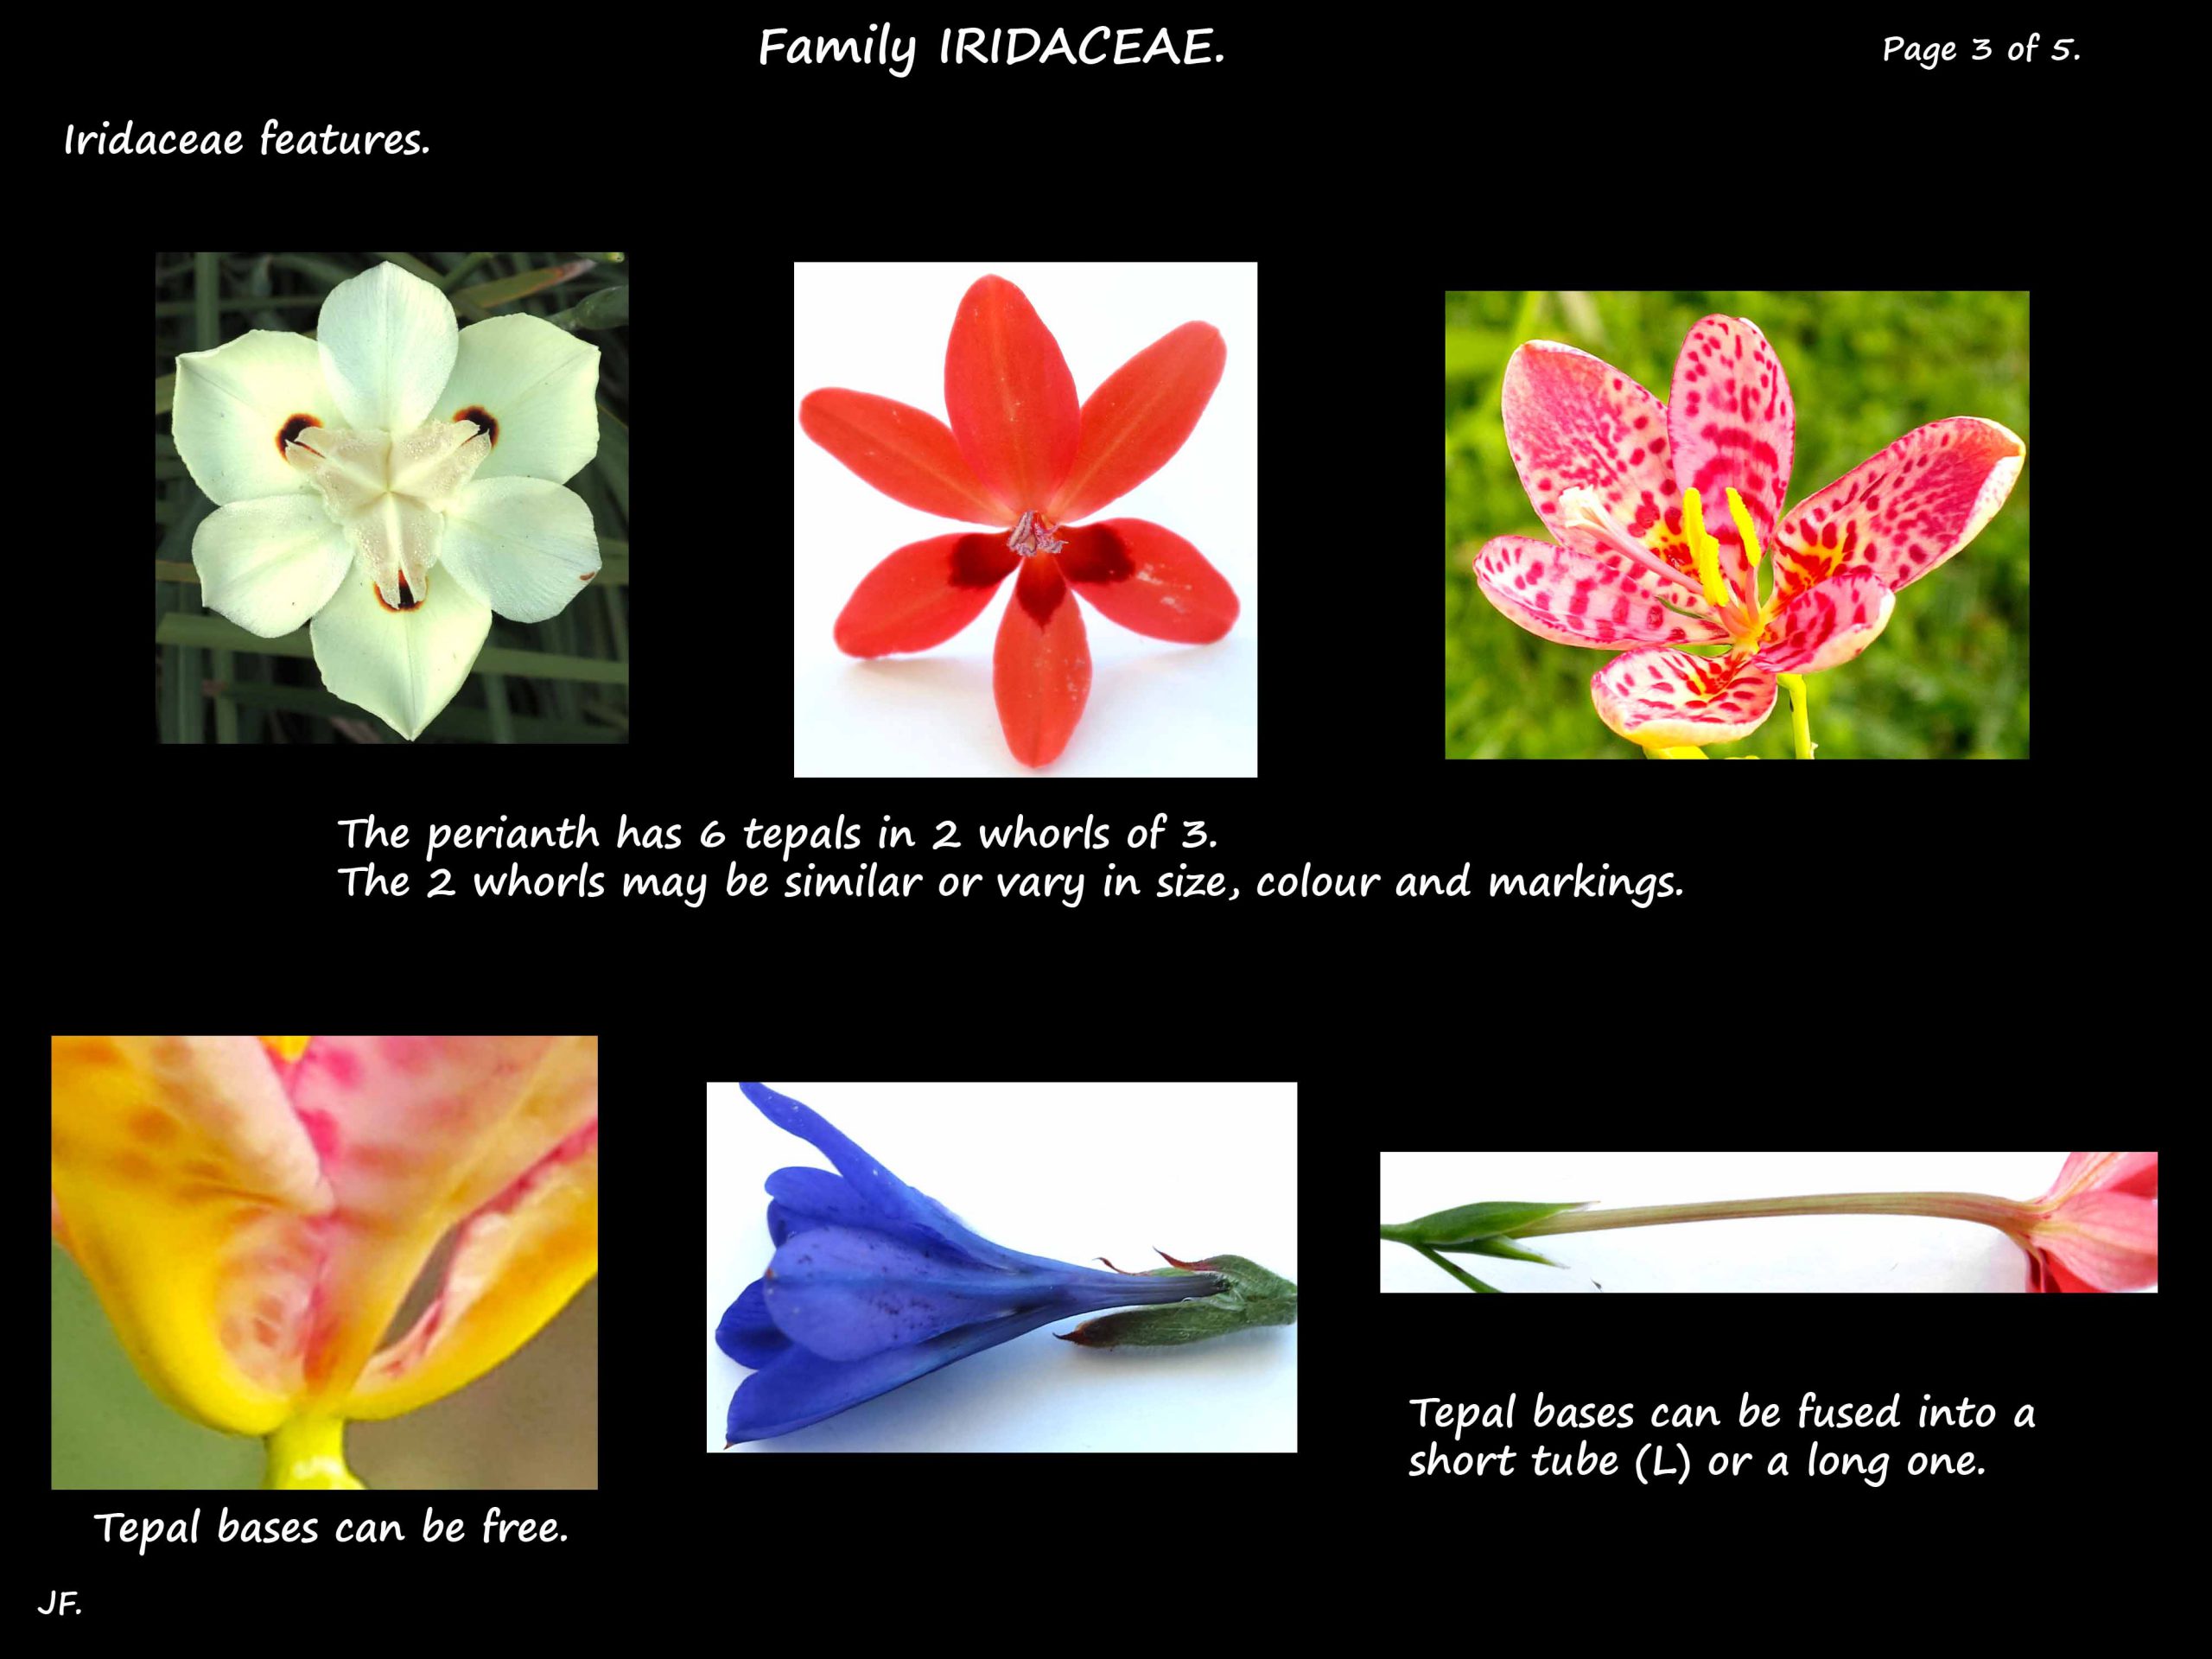 3 Iridaceae flowers